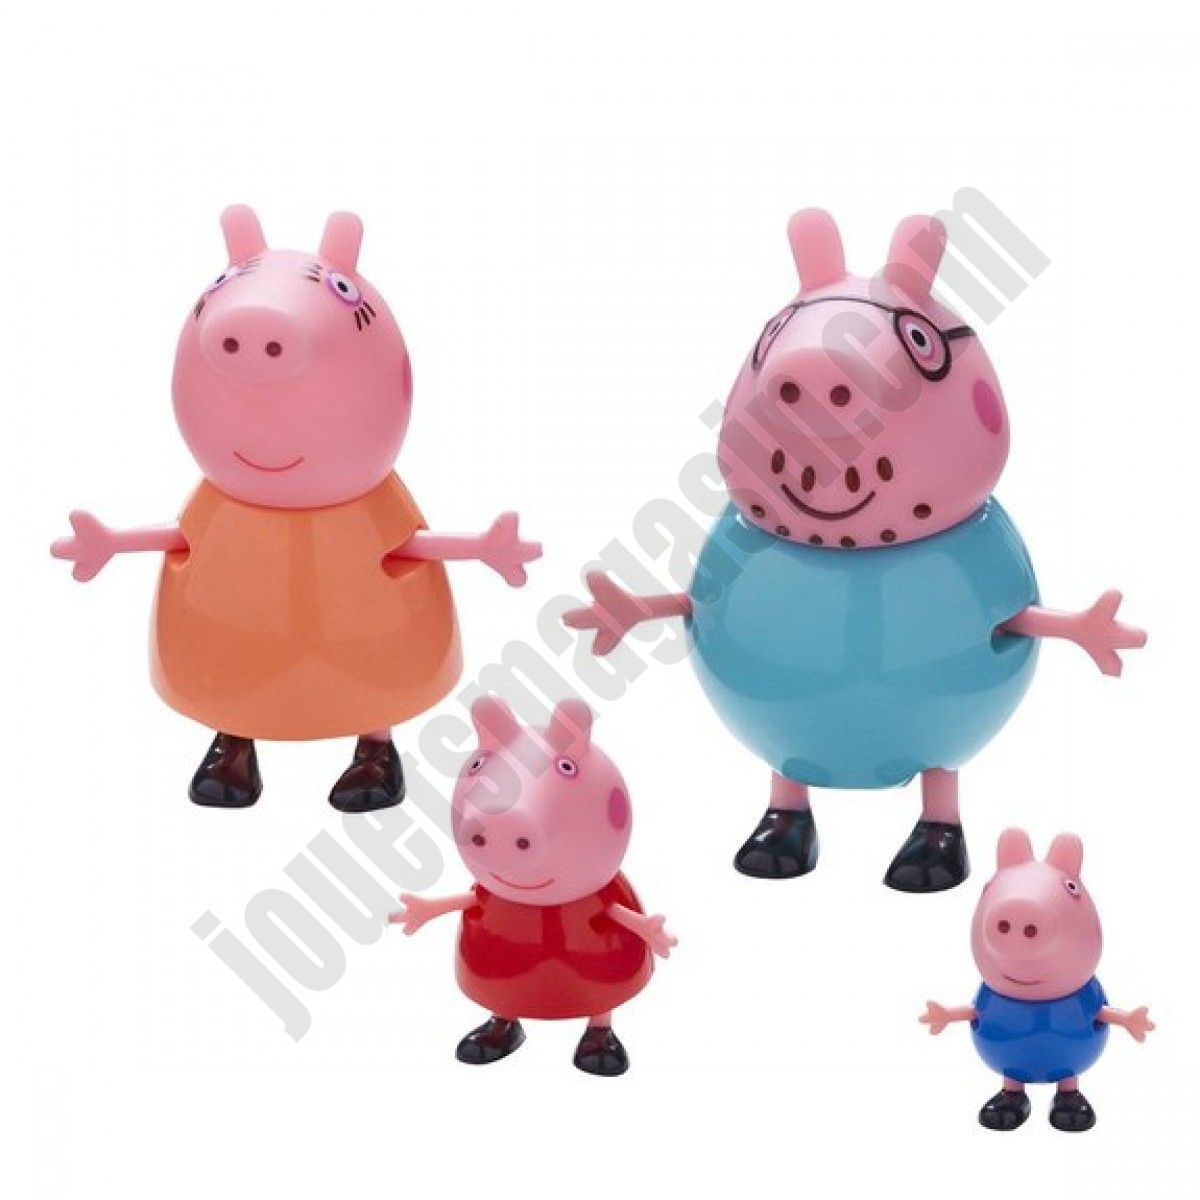 Coffret Famille Peppa Pig ◆◆◆ Nouveau - Coffret Famille Peppa Pig ◆◆◆ Nouveau